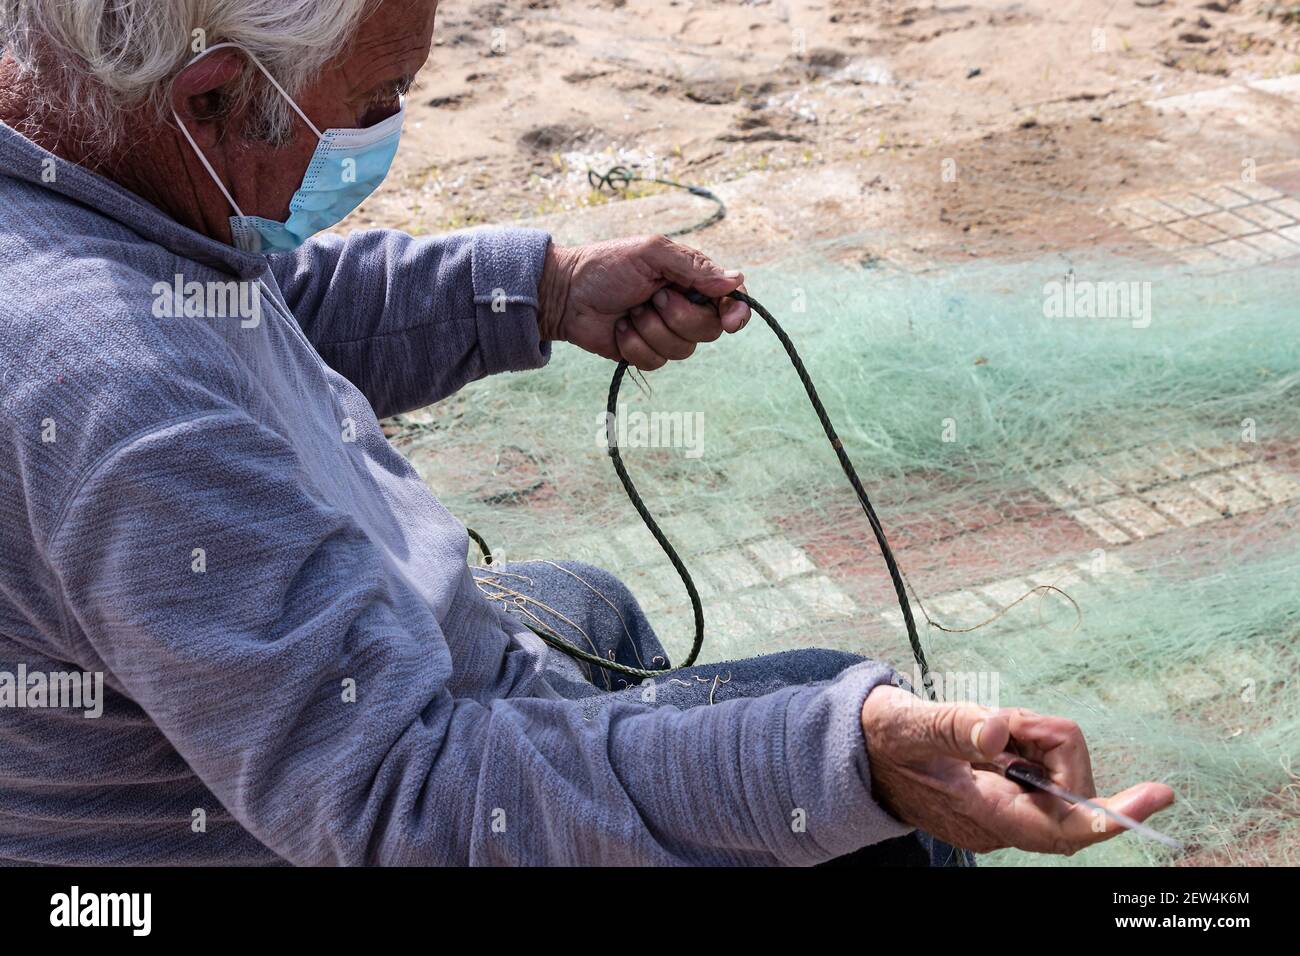 Huelva, Spanien - 27. Februar 2021: Ein Fischernetz wird von einem Fischer mit einem Messer repariert Stockfoto